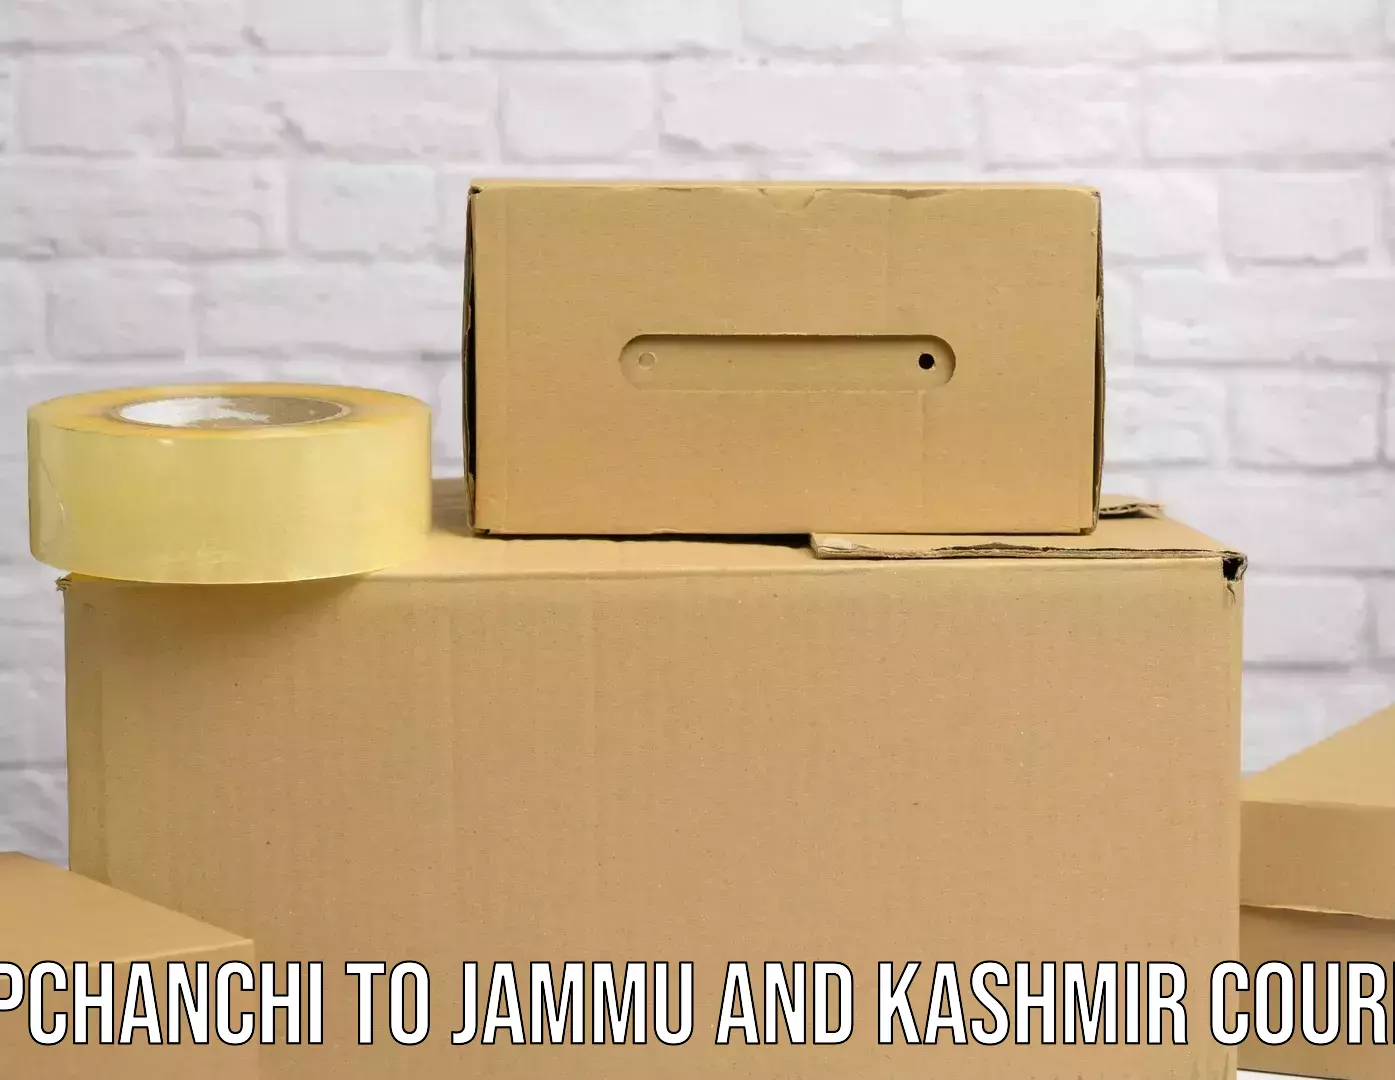 Customer-centric shipping Topchanchi to Jammu and Kashmir